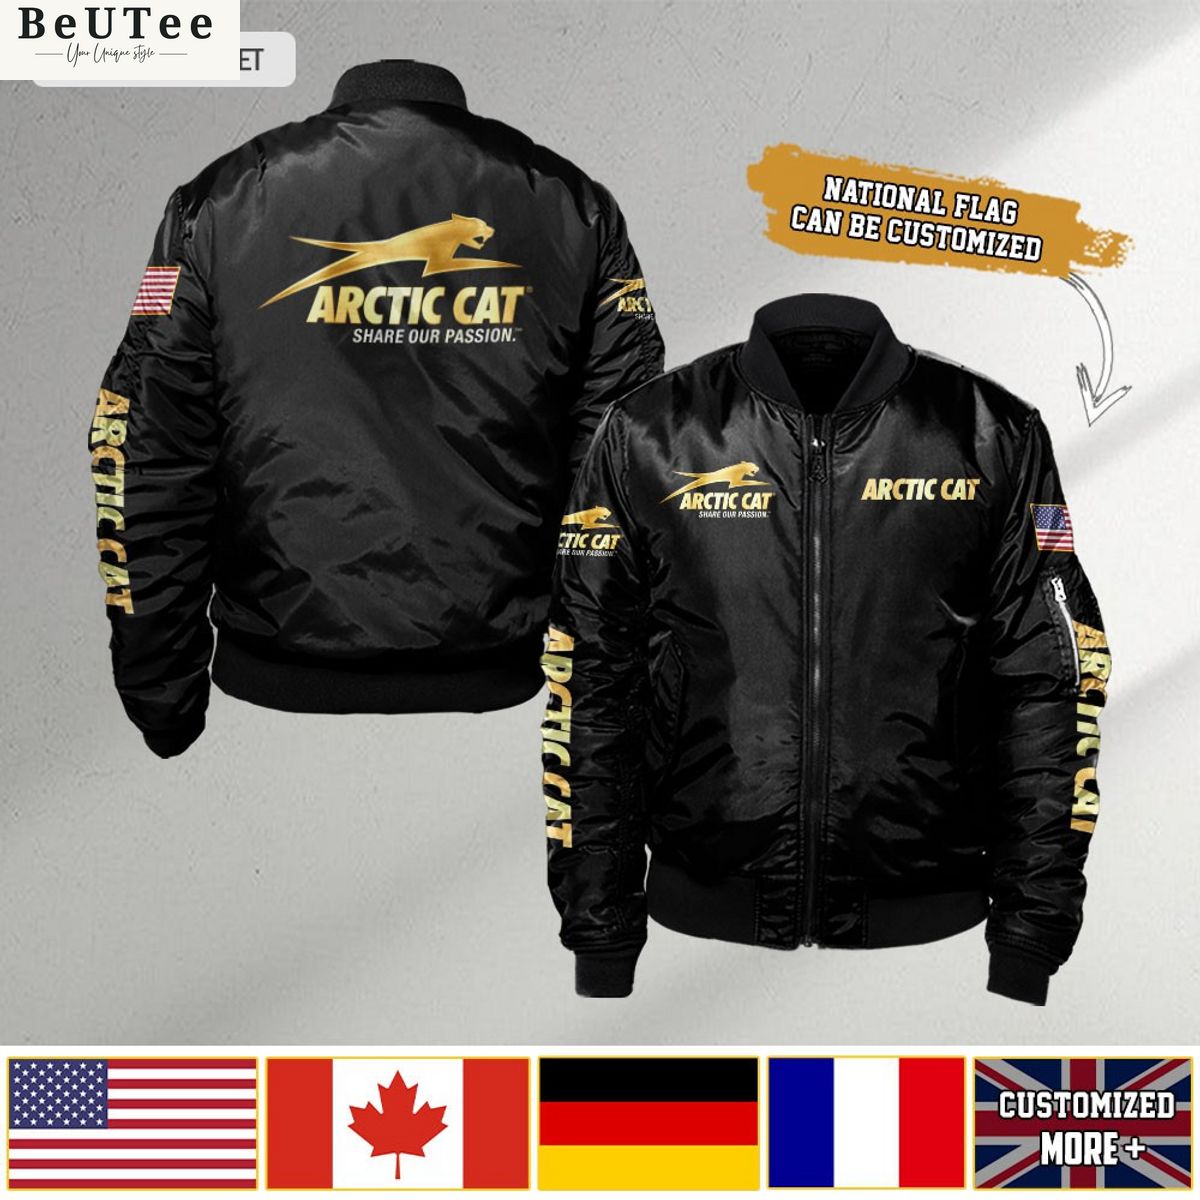 arctic cat custom flag 3d bomber jacket 1 v2Uvb.jpg